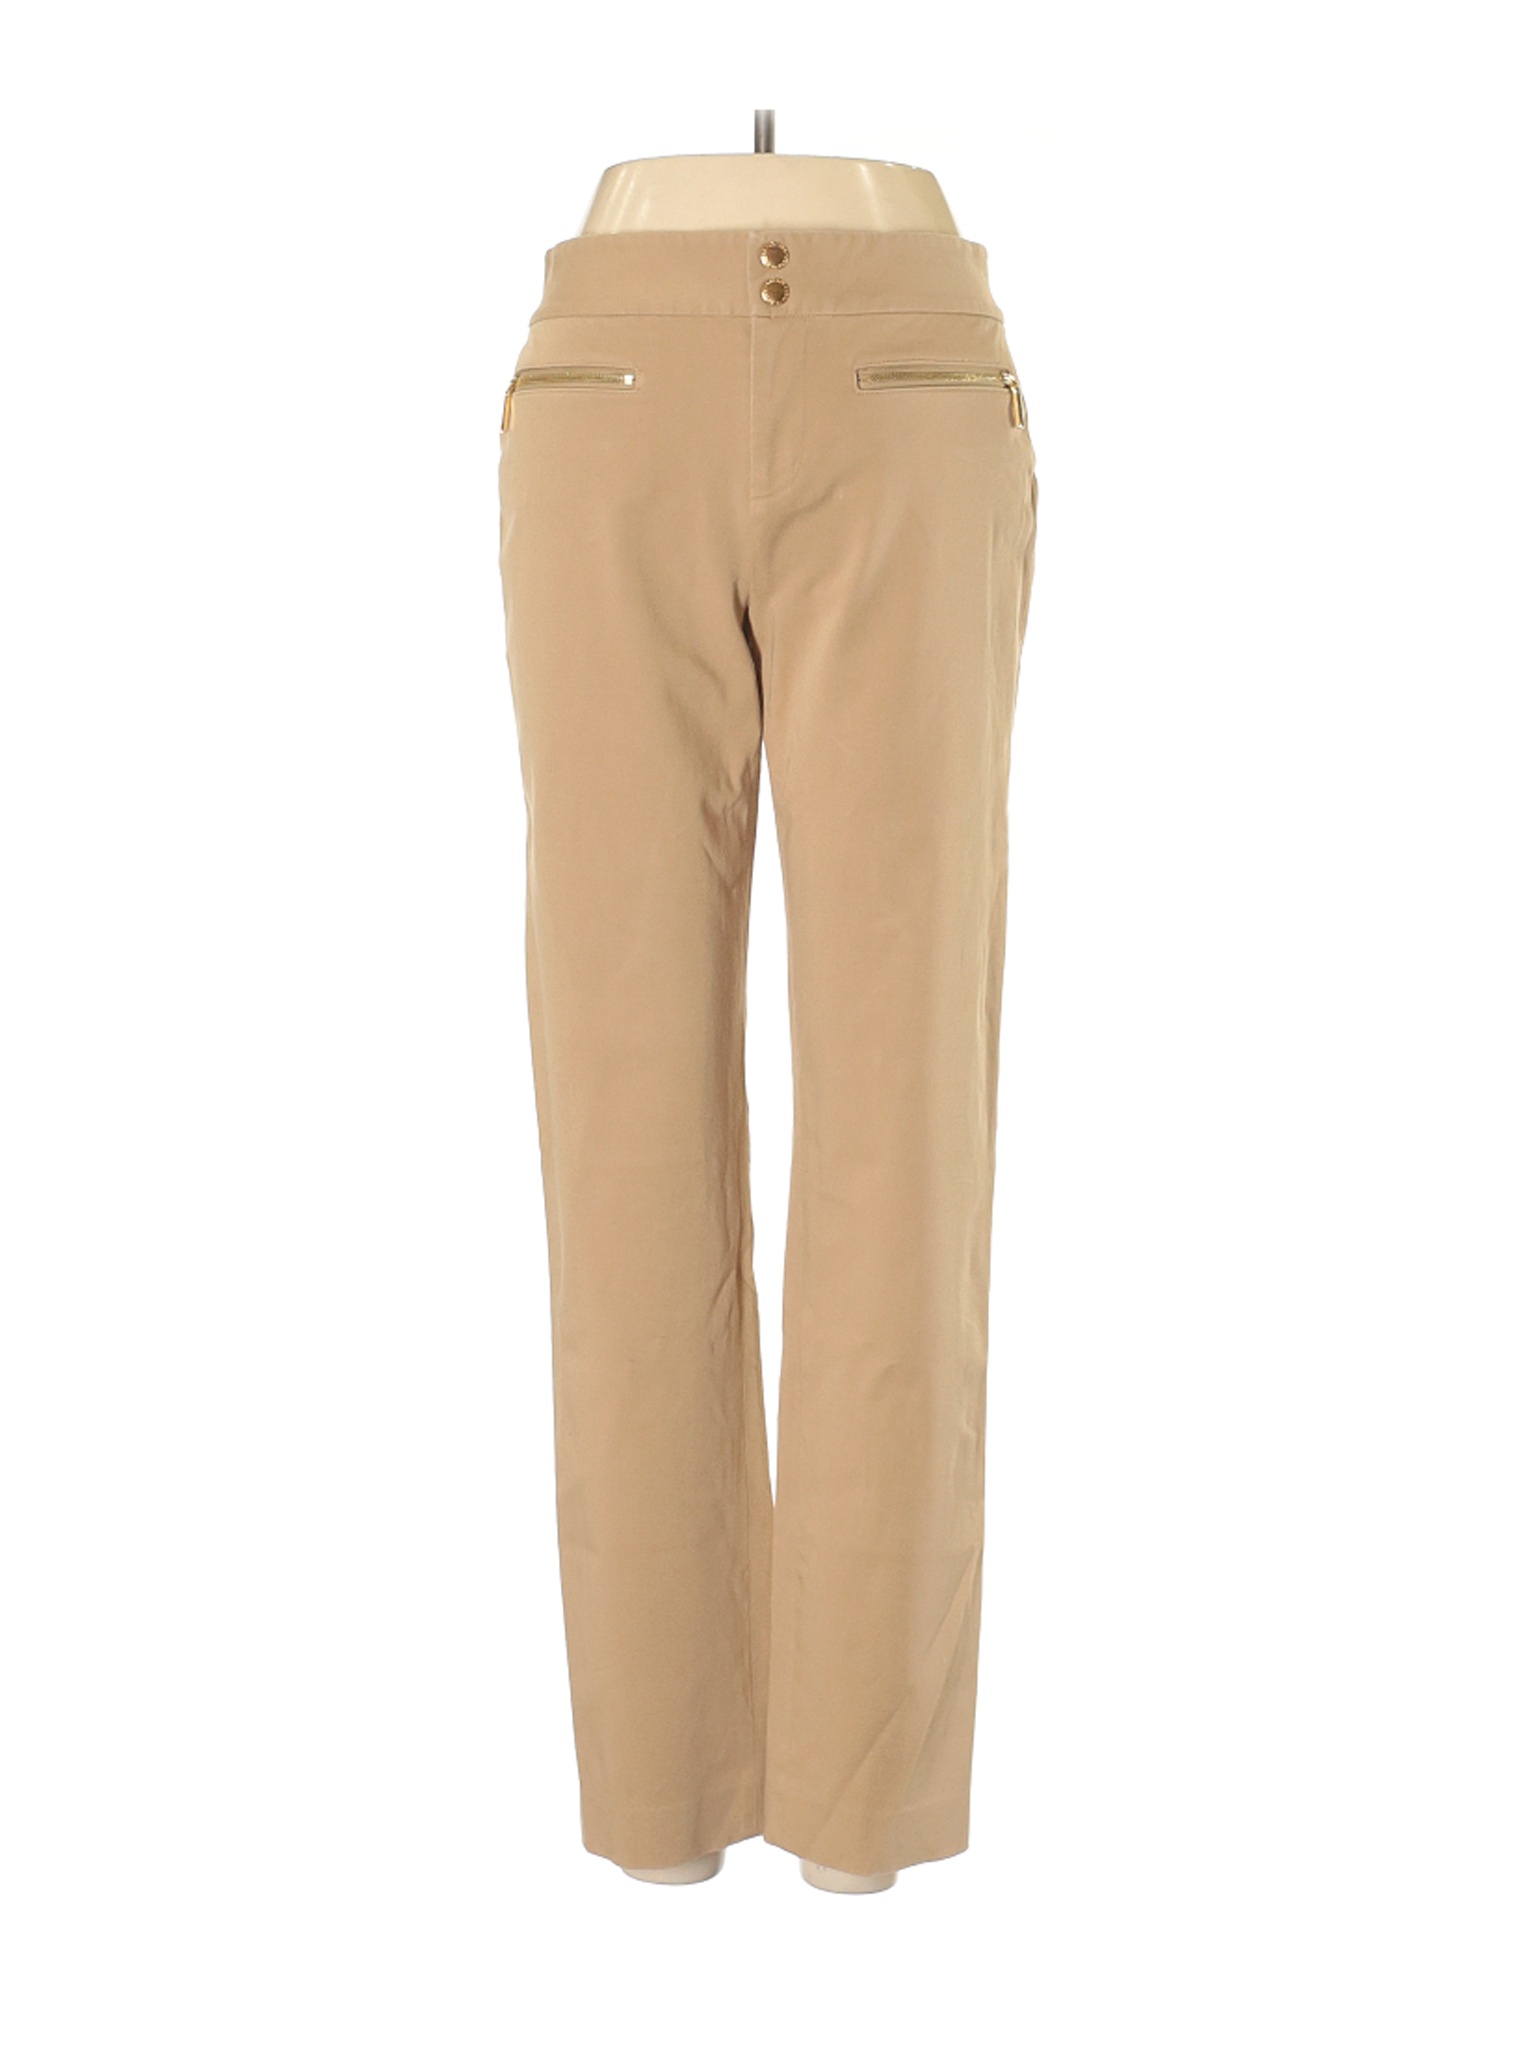 Lauren by Ralph Lauren Women Brown Casual Pants 2 Petites | eBay